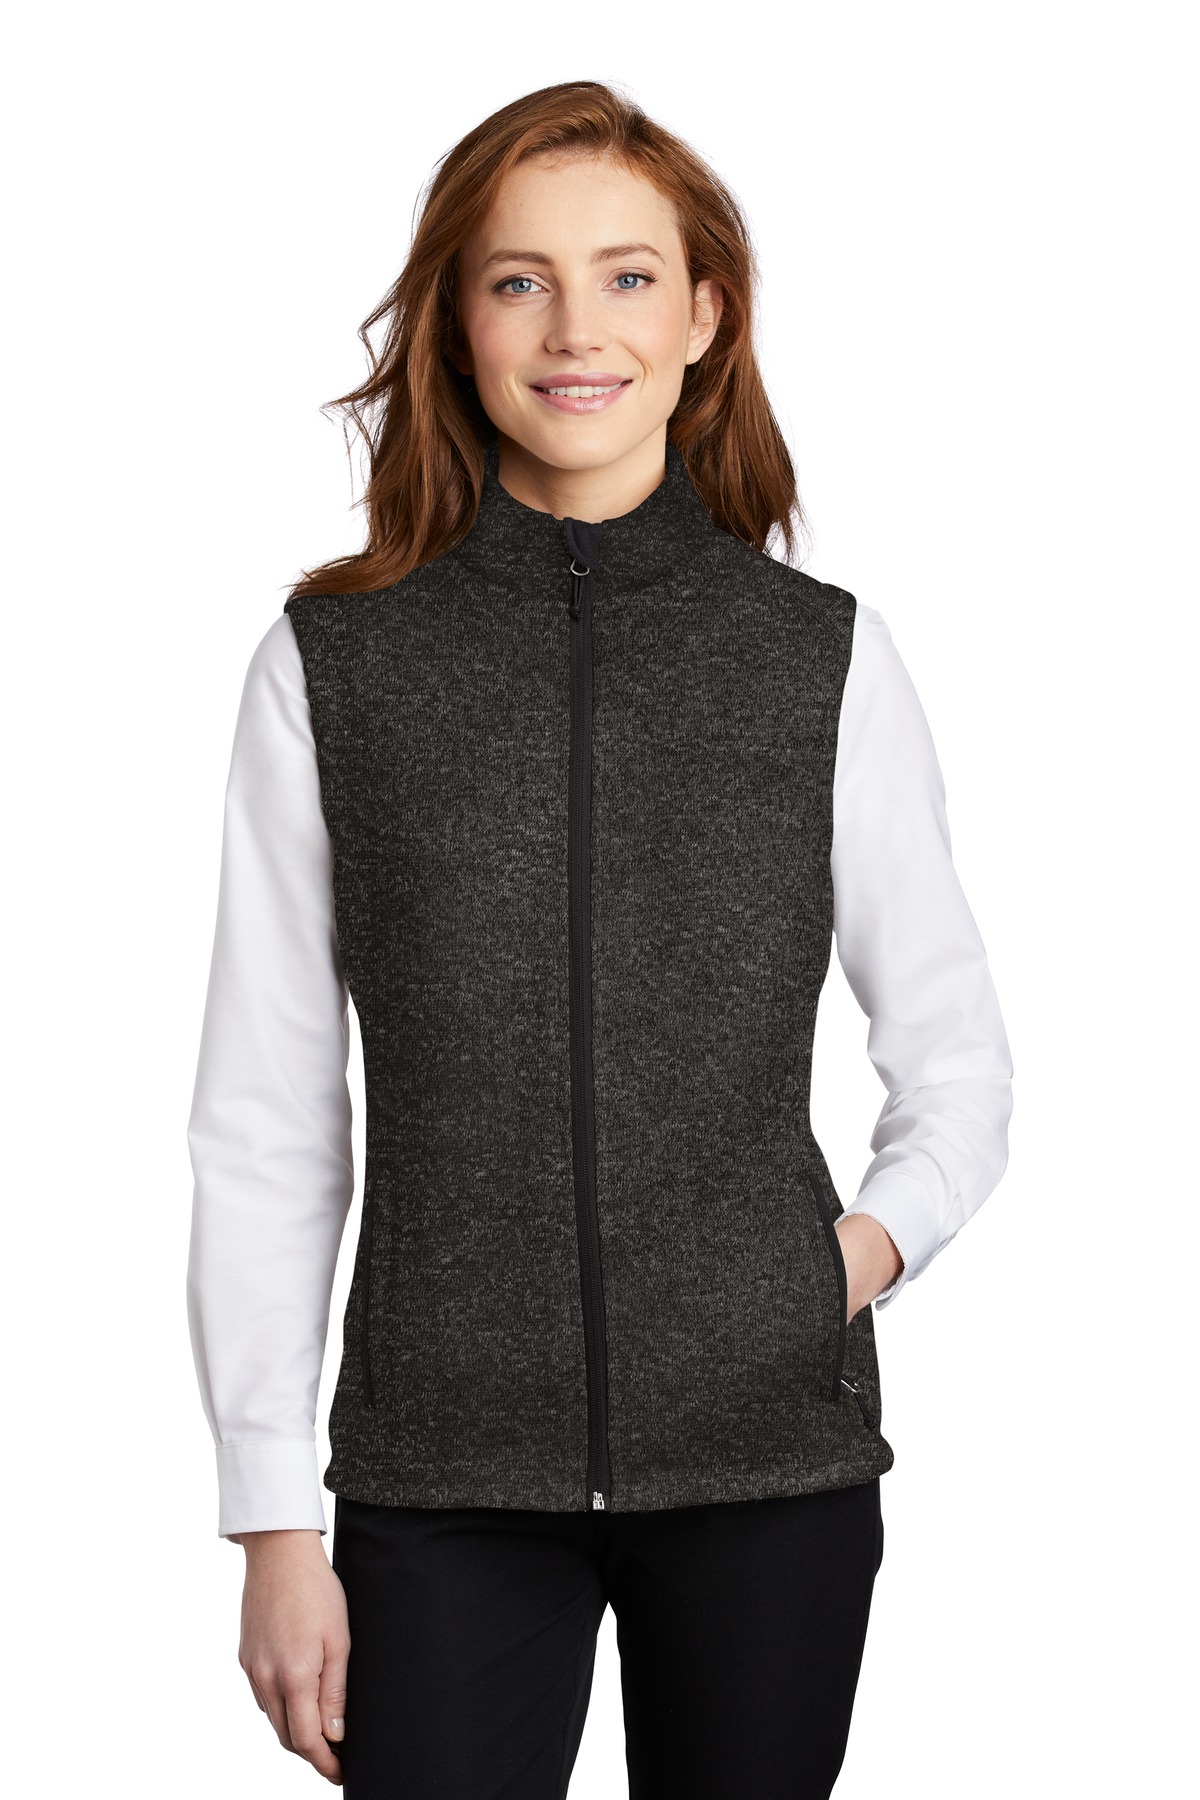 L236 - Ladies Sweater Fleece Vest